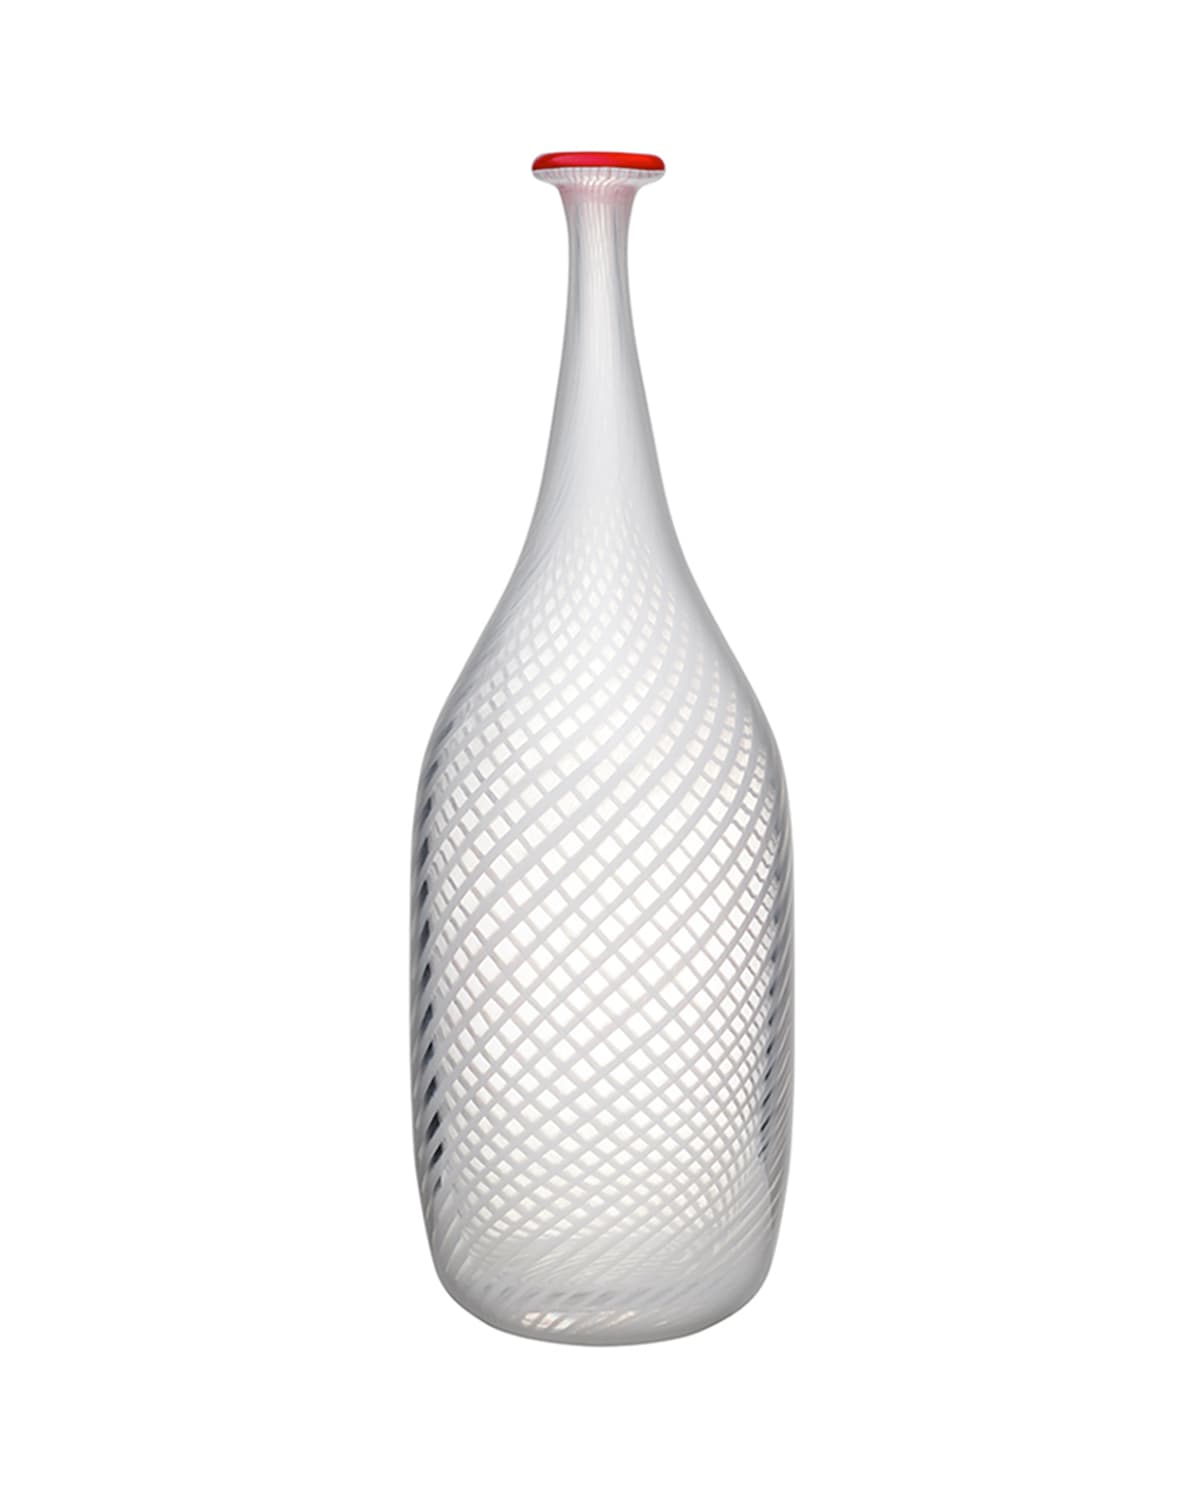 Red Rim Bottle, White